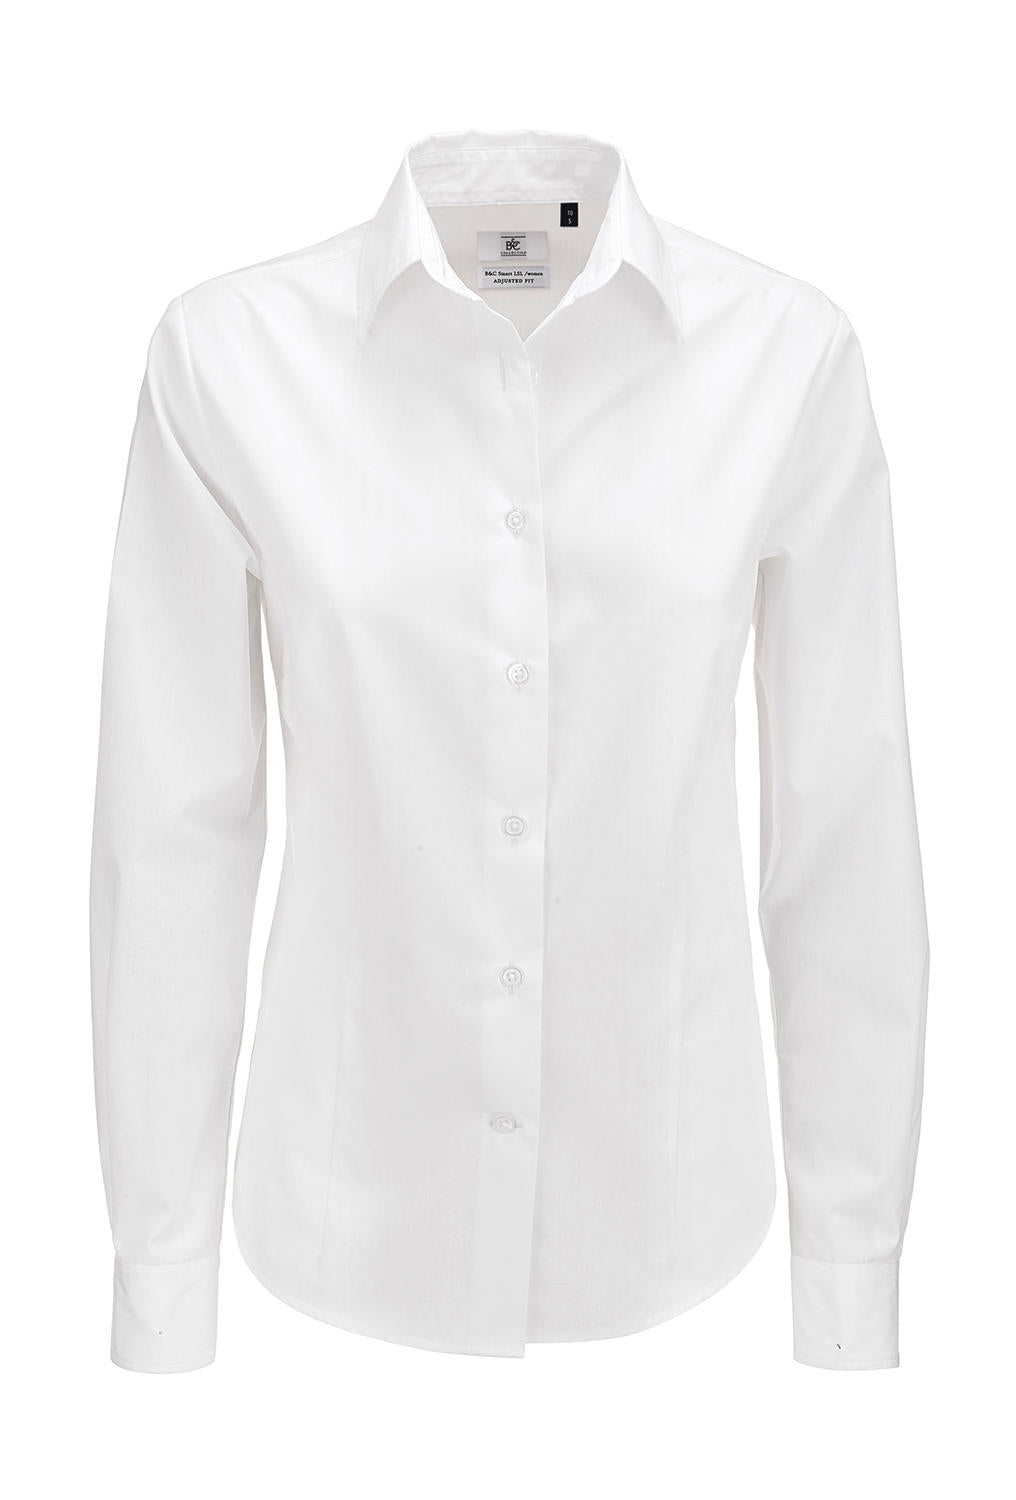 B&C Damen Business Bluse Oberteil T-Shirt Longsleeve Shirt langarm